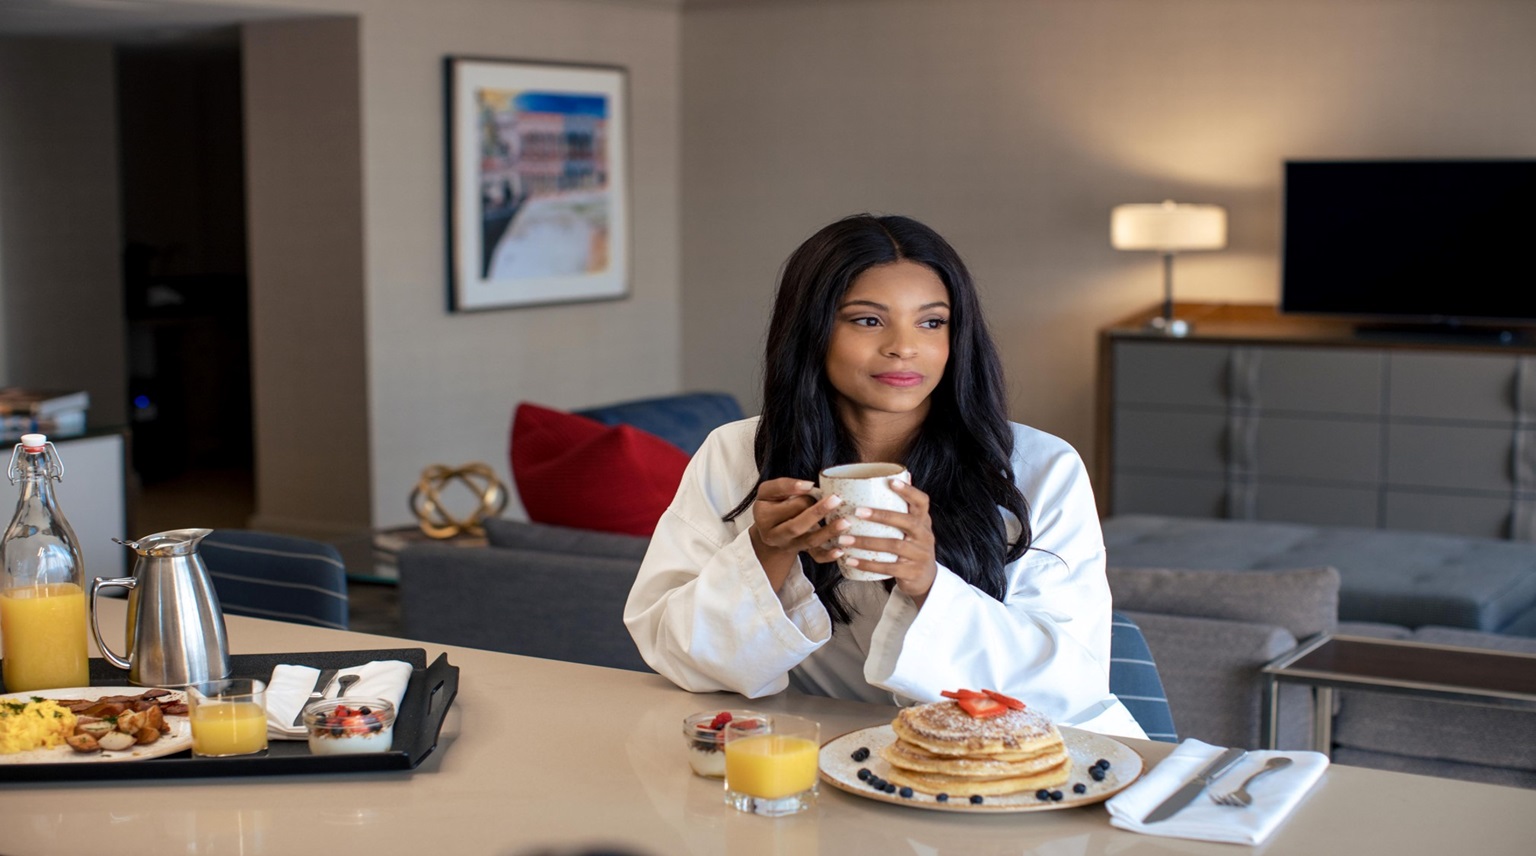 Woman eating breakfast in room.